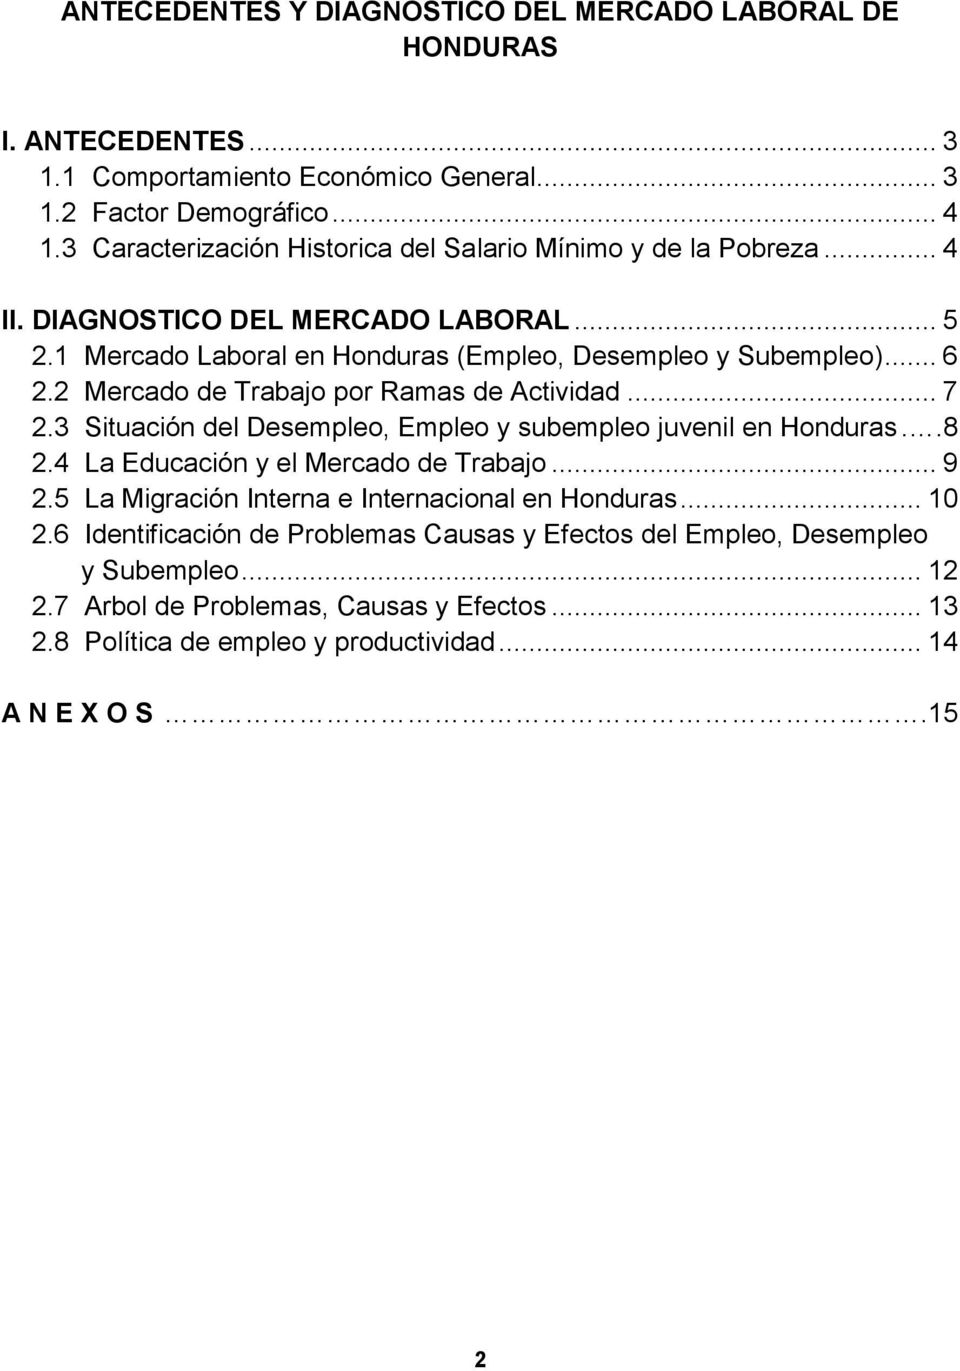 2 Mercado de Trabajo por Ramas de Actividad... 7 2.3 Situación del Desempleo, Empleo y subempleo juvenil en Honduras..8 2.4 La Educación y el Mercado de Trabajo... 9 2.